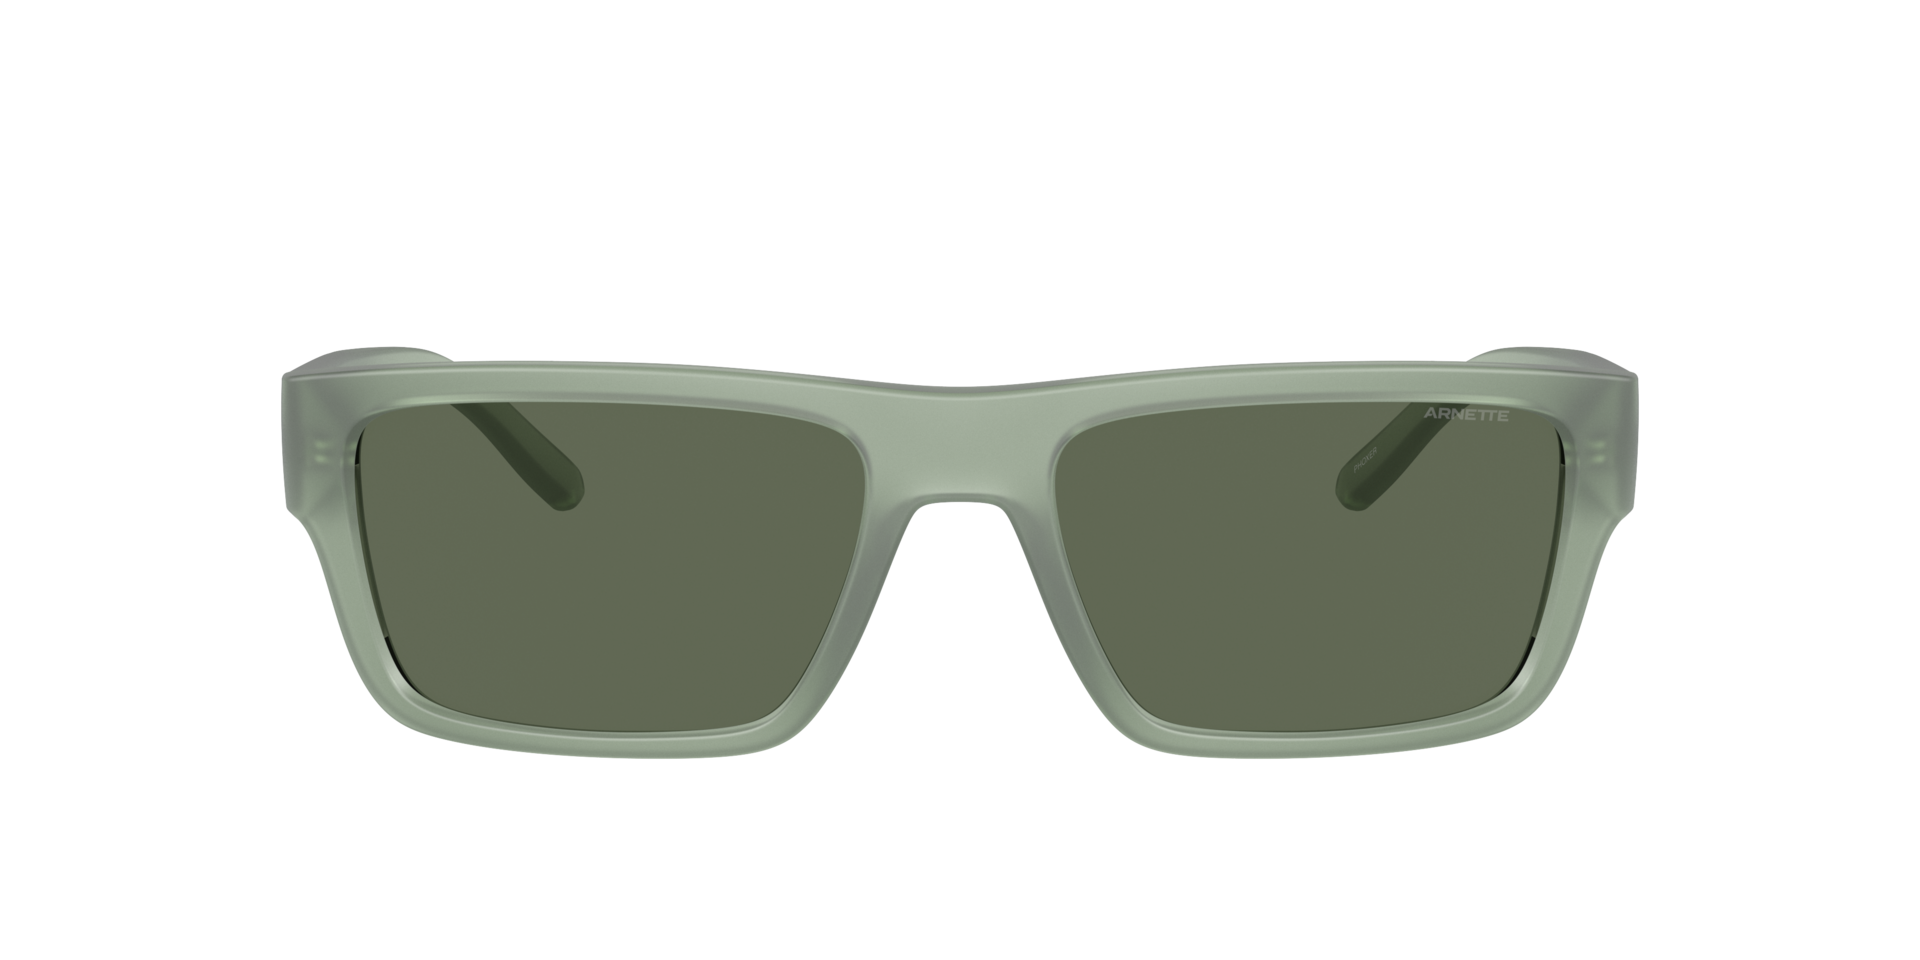 Das Bild zeigt die Sonnenbrille AN4338 293971 von der Marke Arnette in grün.